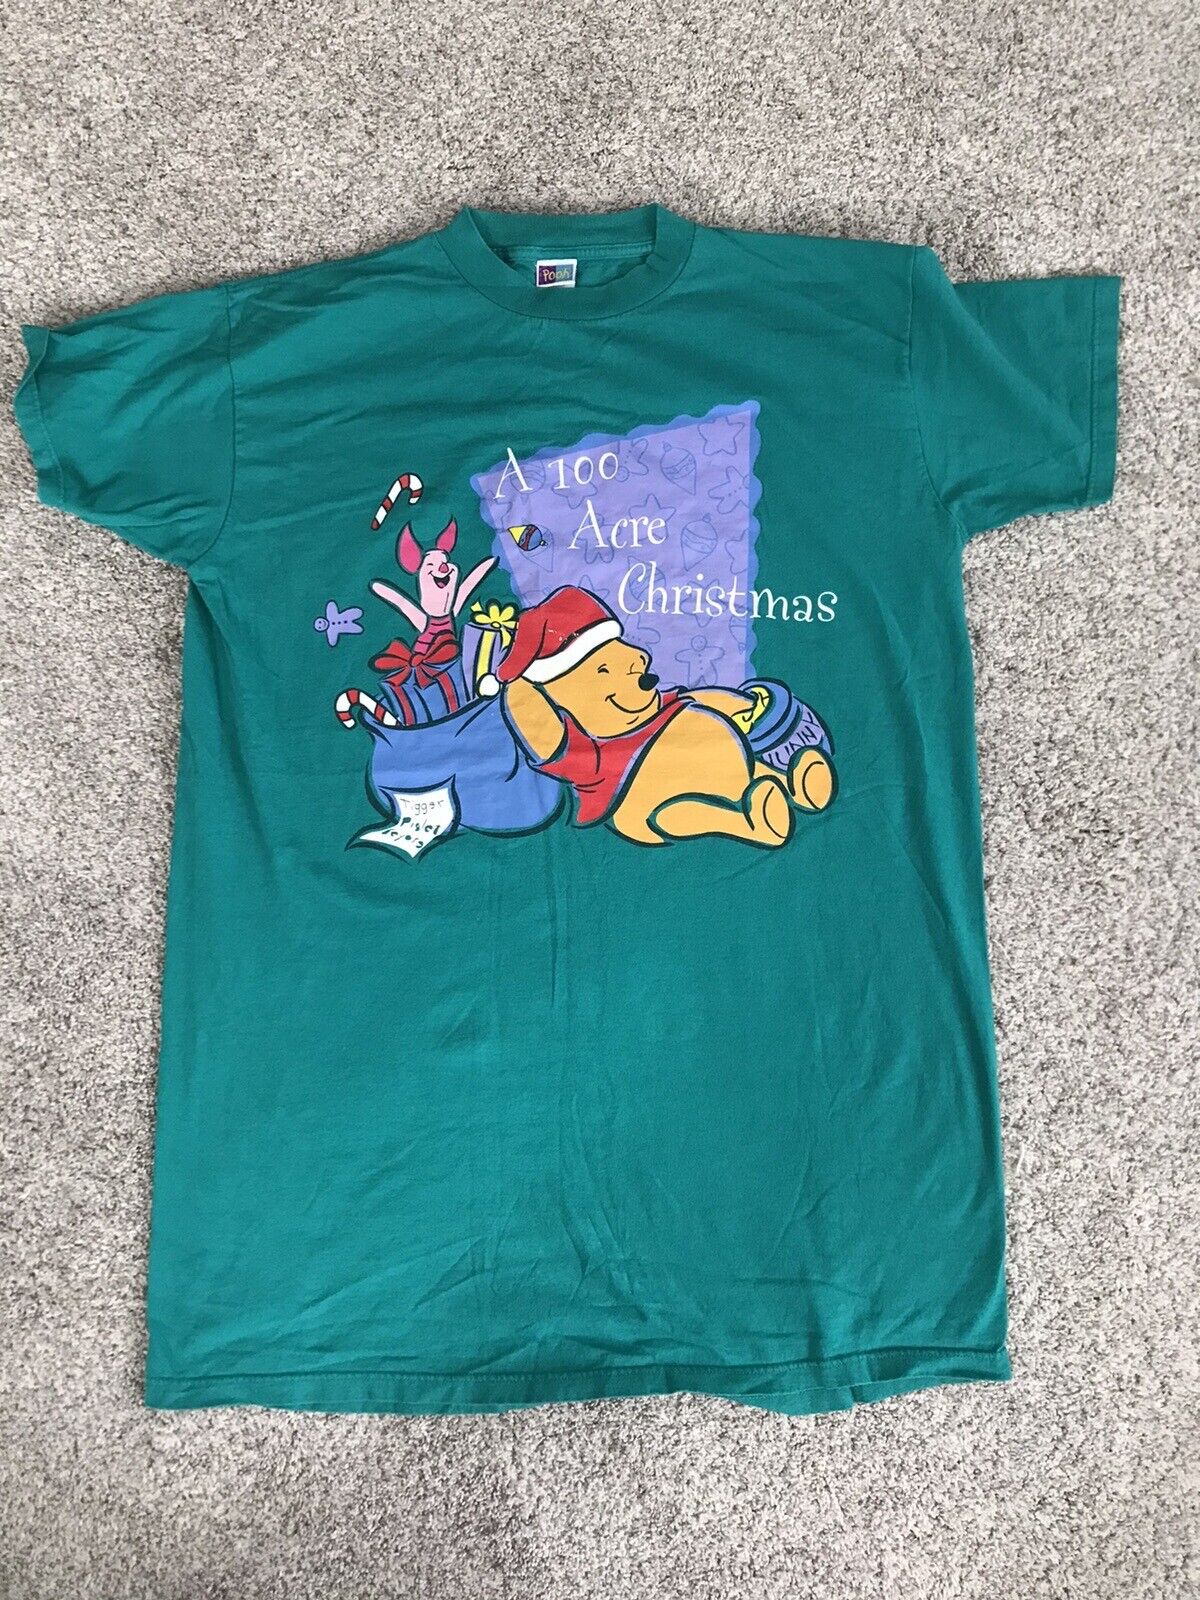 Vtg Winnie The Pooh Christmas Oversized sleep T Shirt Pooh Tag 90s Y2k Retro